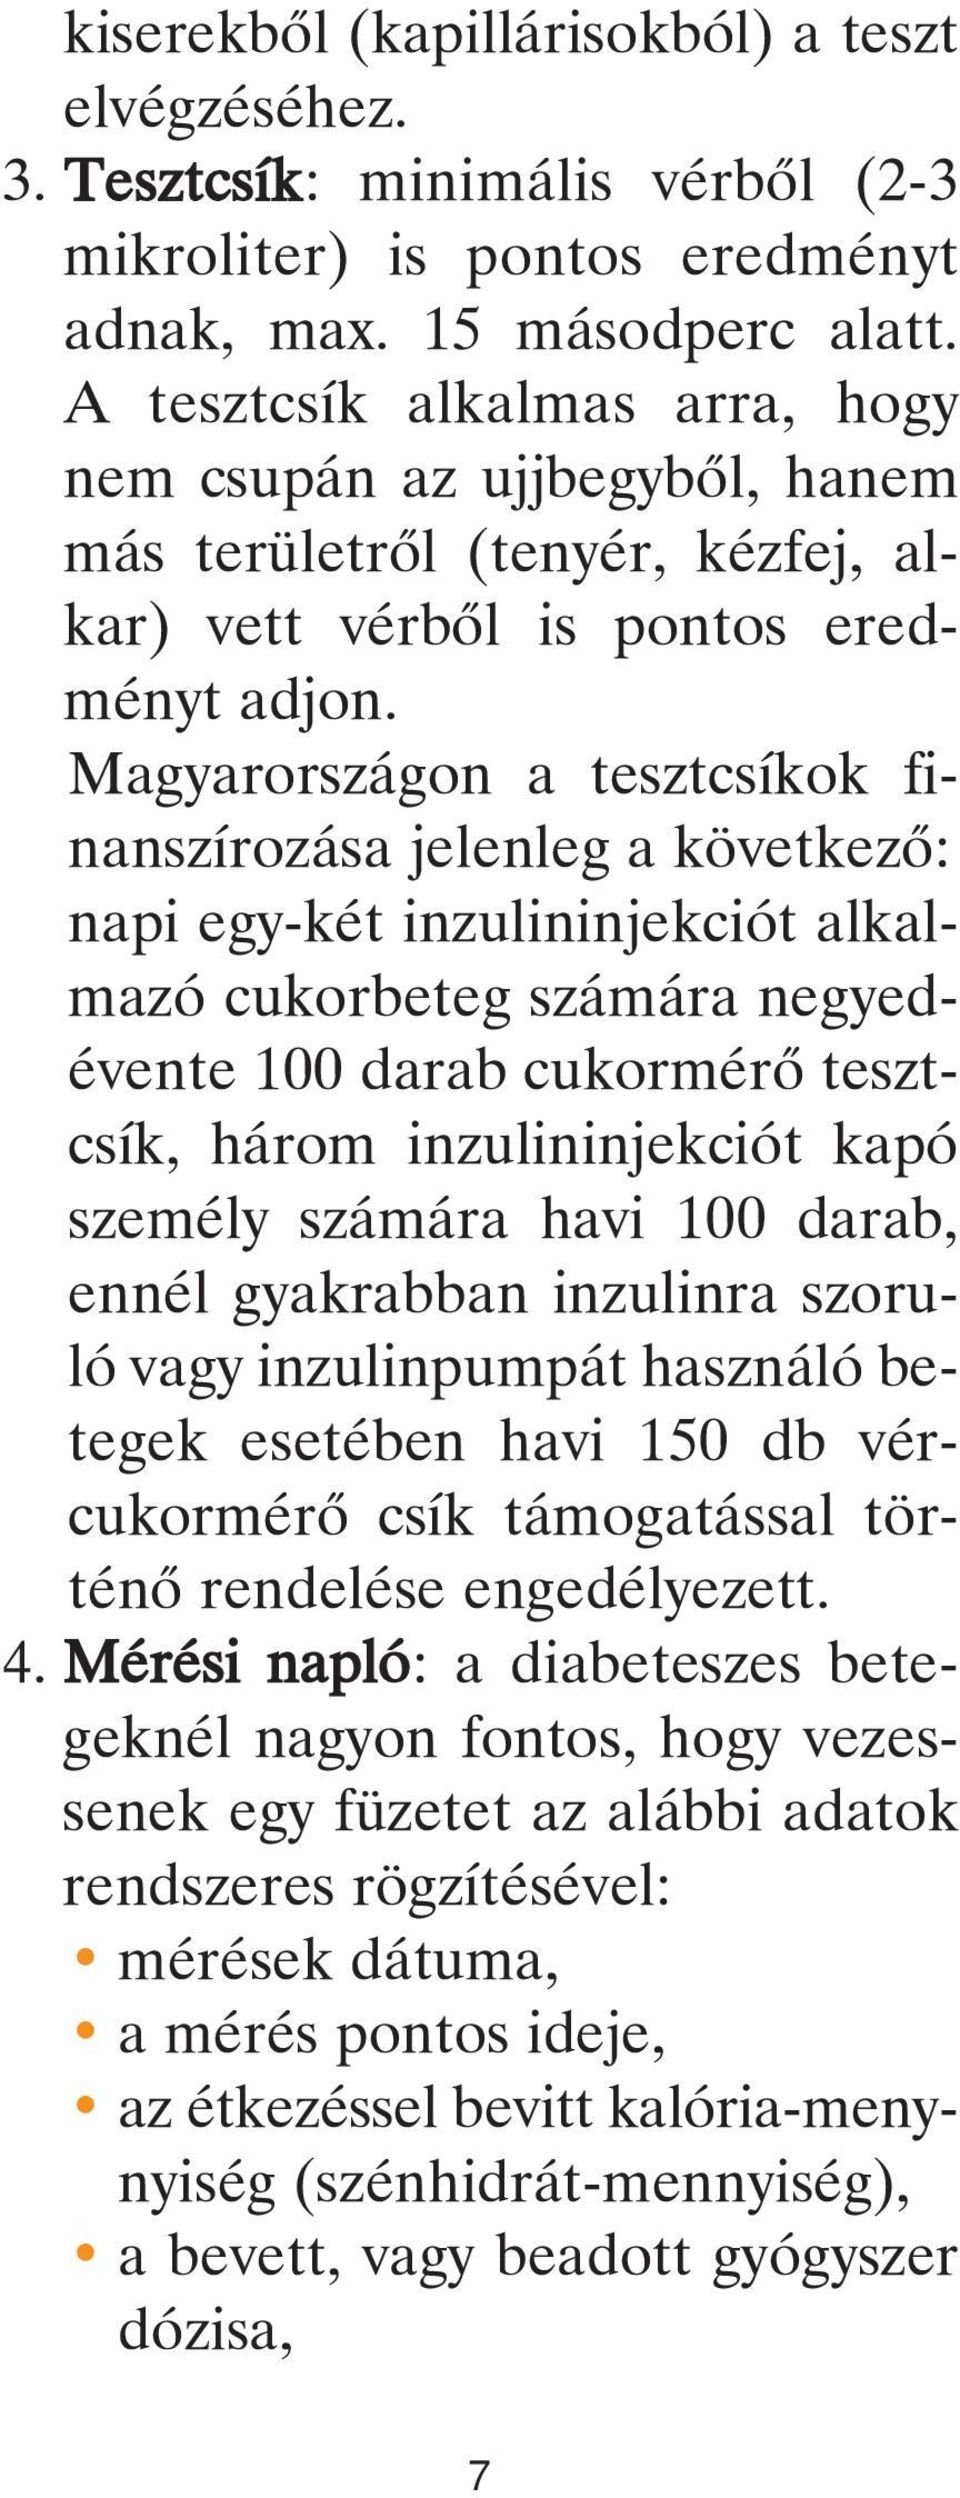 Magyarországon a tesztcsíkok finanszírozása jelenleg a következô: napi egy-két inzulininjekciót alkalmazó cukorbeteg számára negyedévente 100 darab cukormérô tesztcsík, három inzulininjekciót kapó